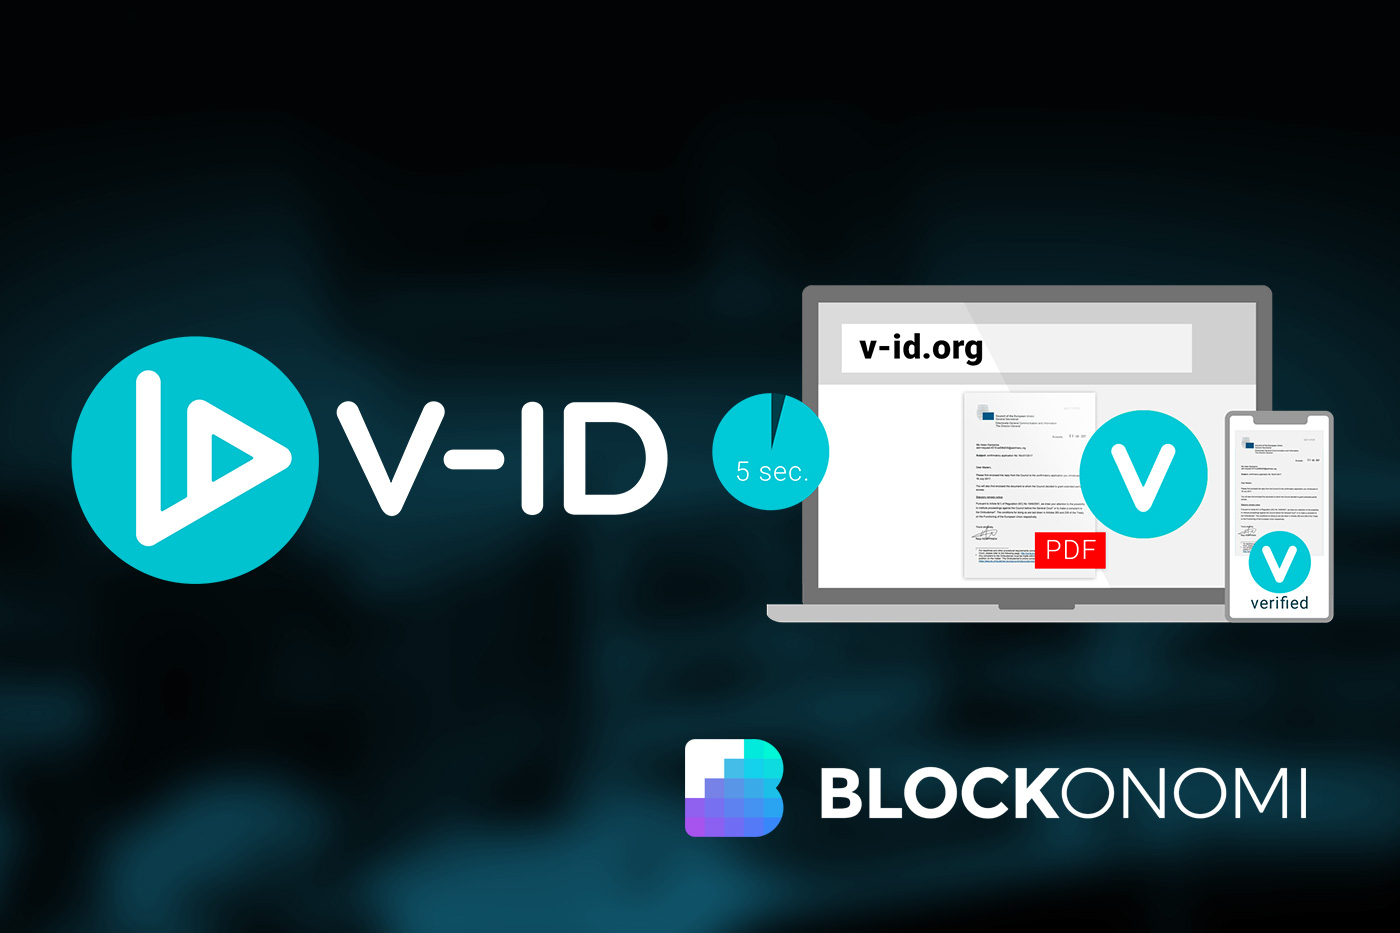 Co je V-ID?